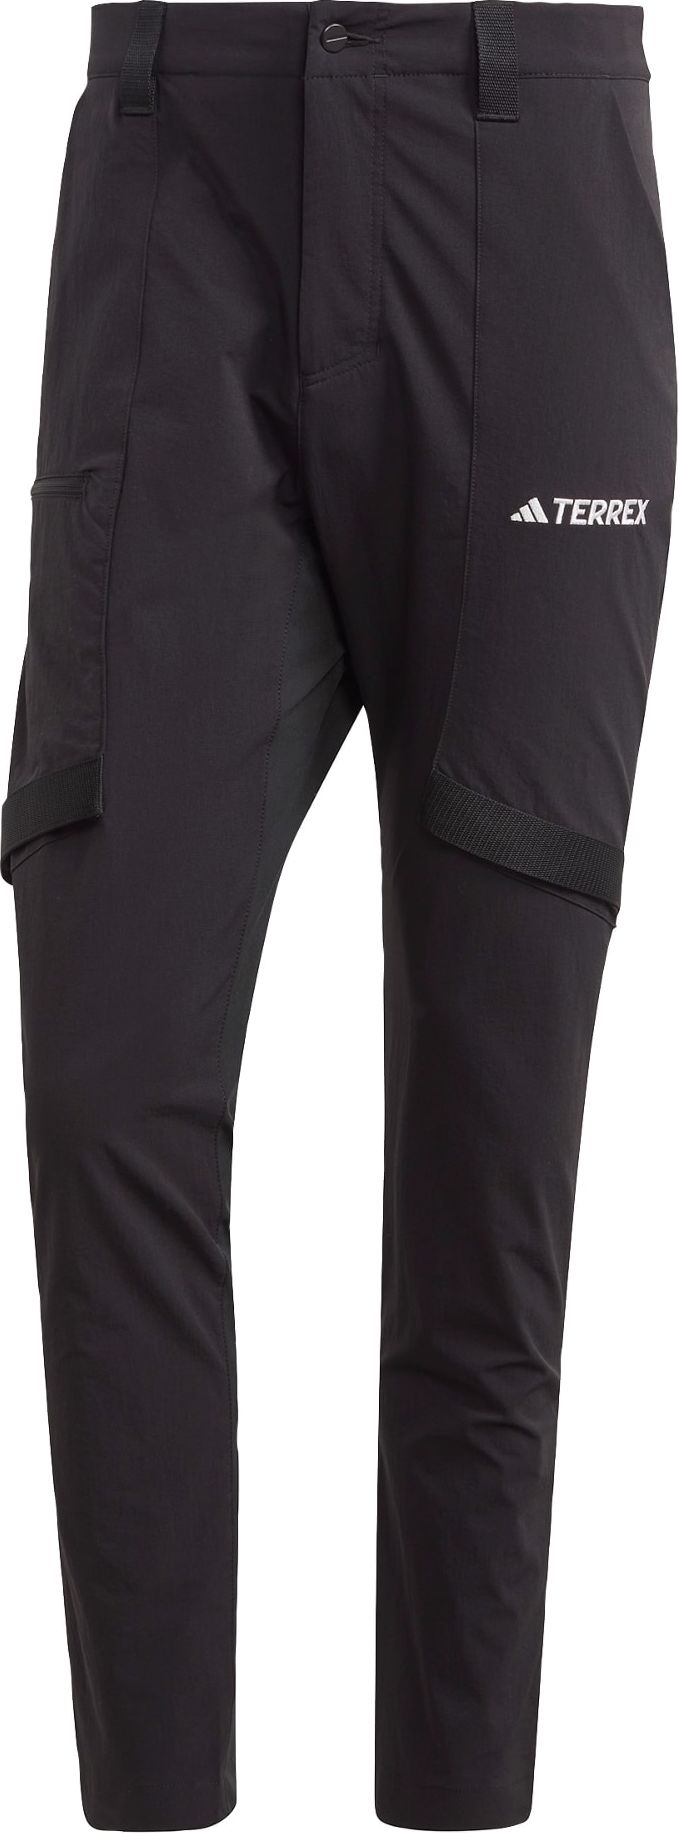 ADIDAS TERREX Outdoorové kalhoty 'Xperior' černá